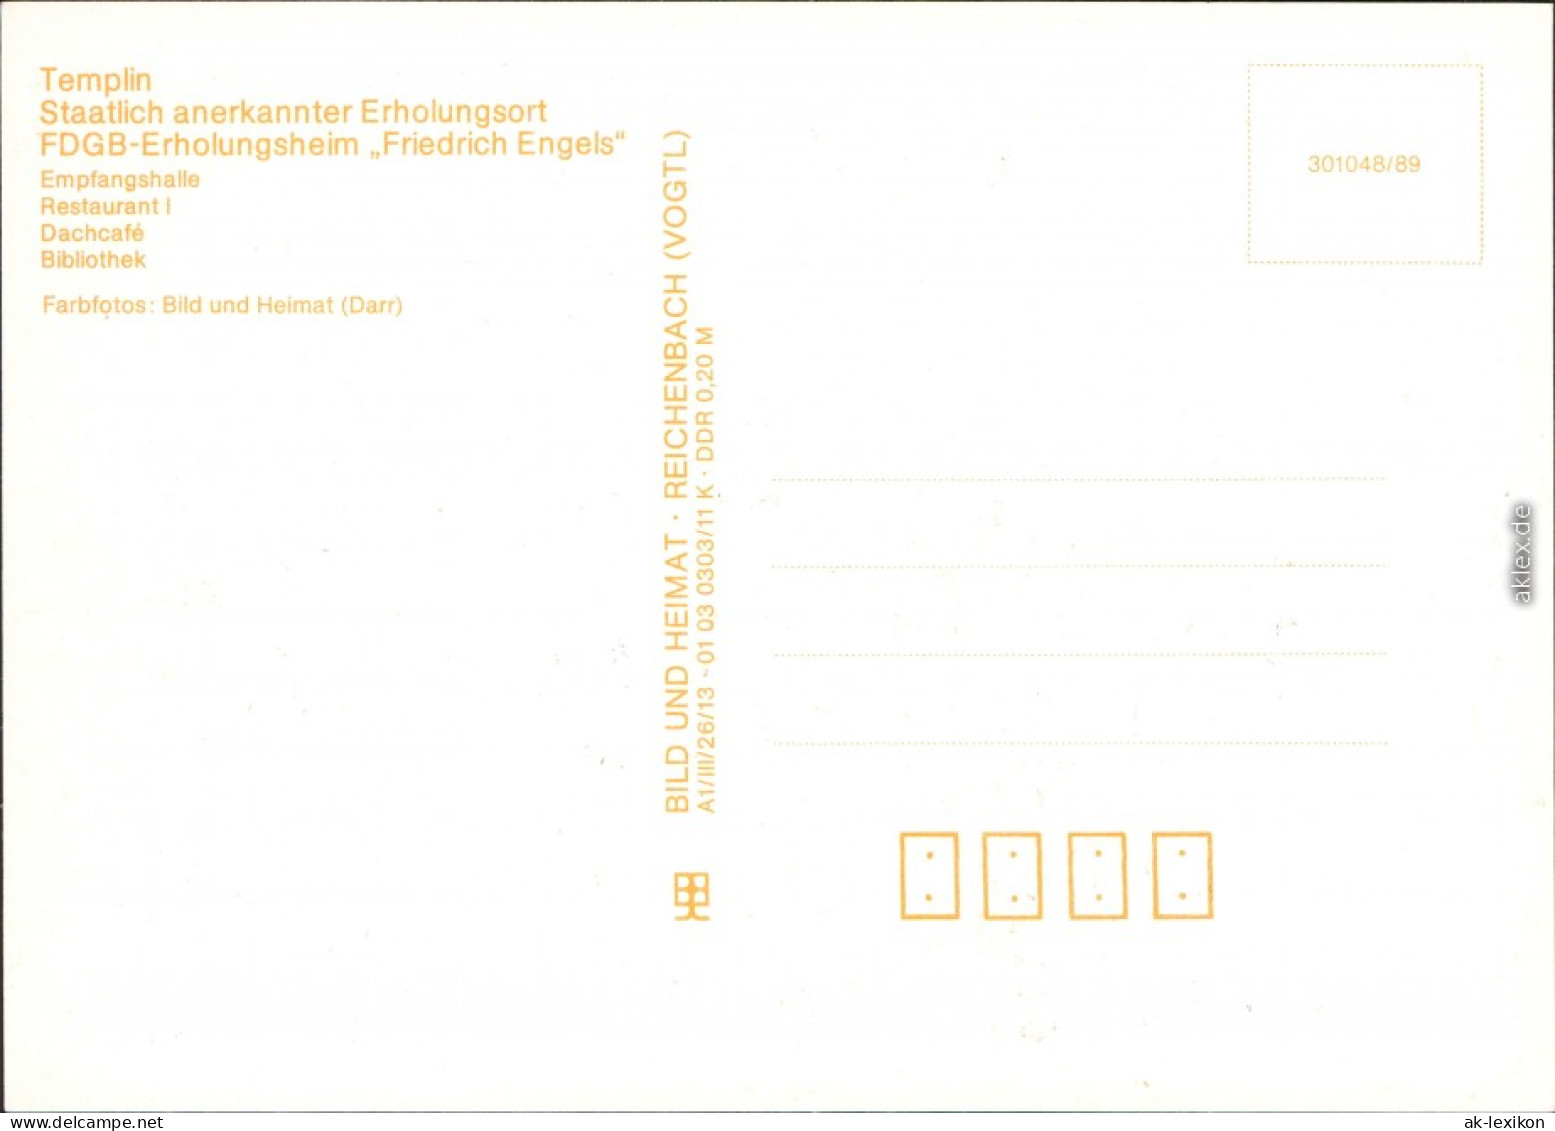 Templin FDGB-Erholungsheim "Friedrich Engels" Uckermark 1989 - Templin